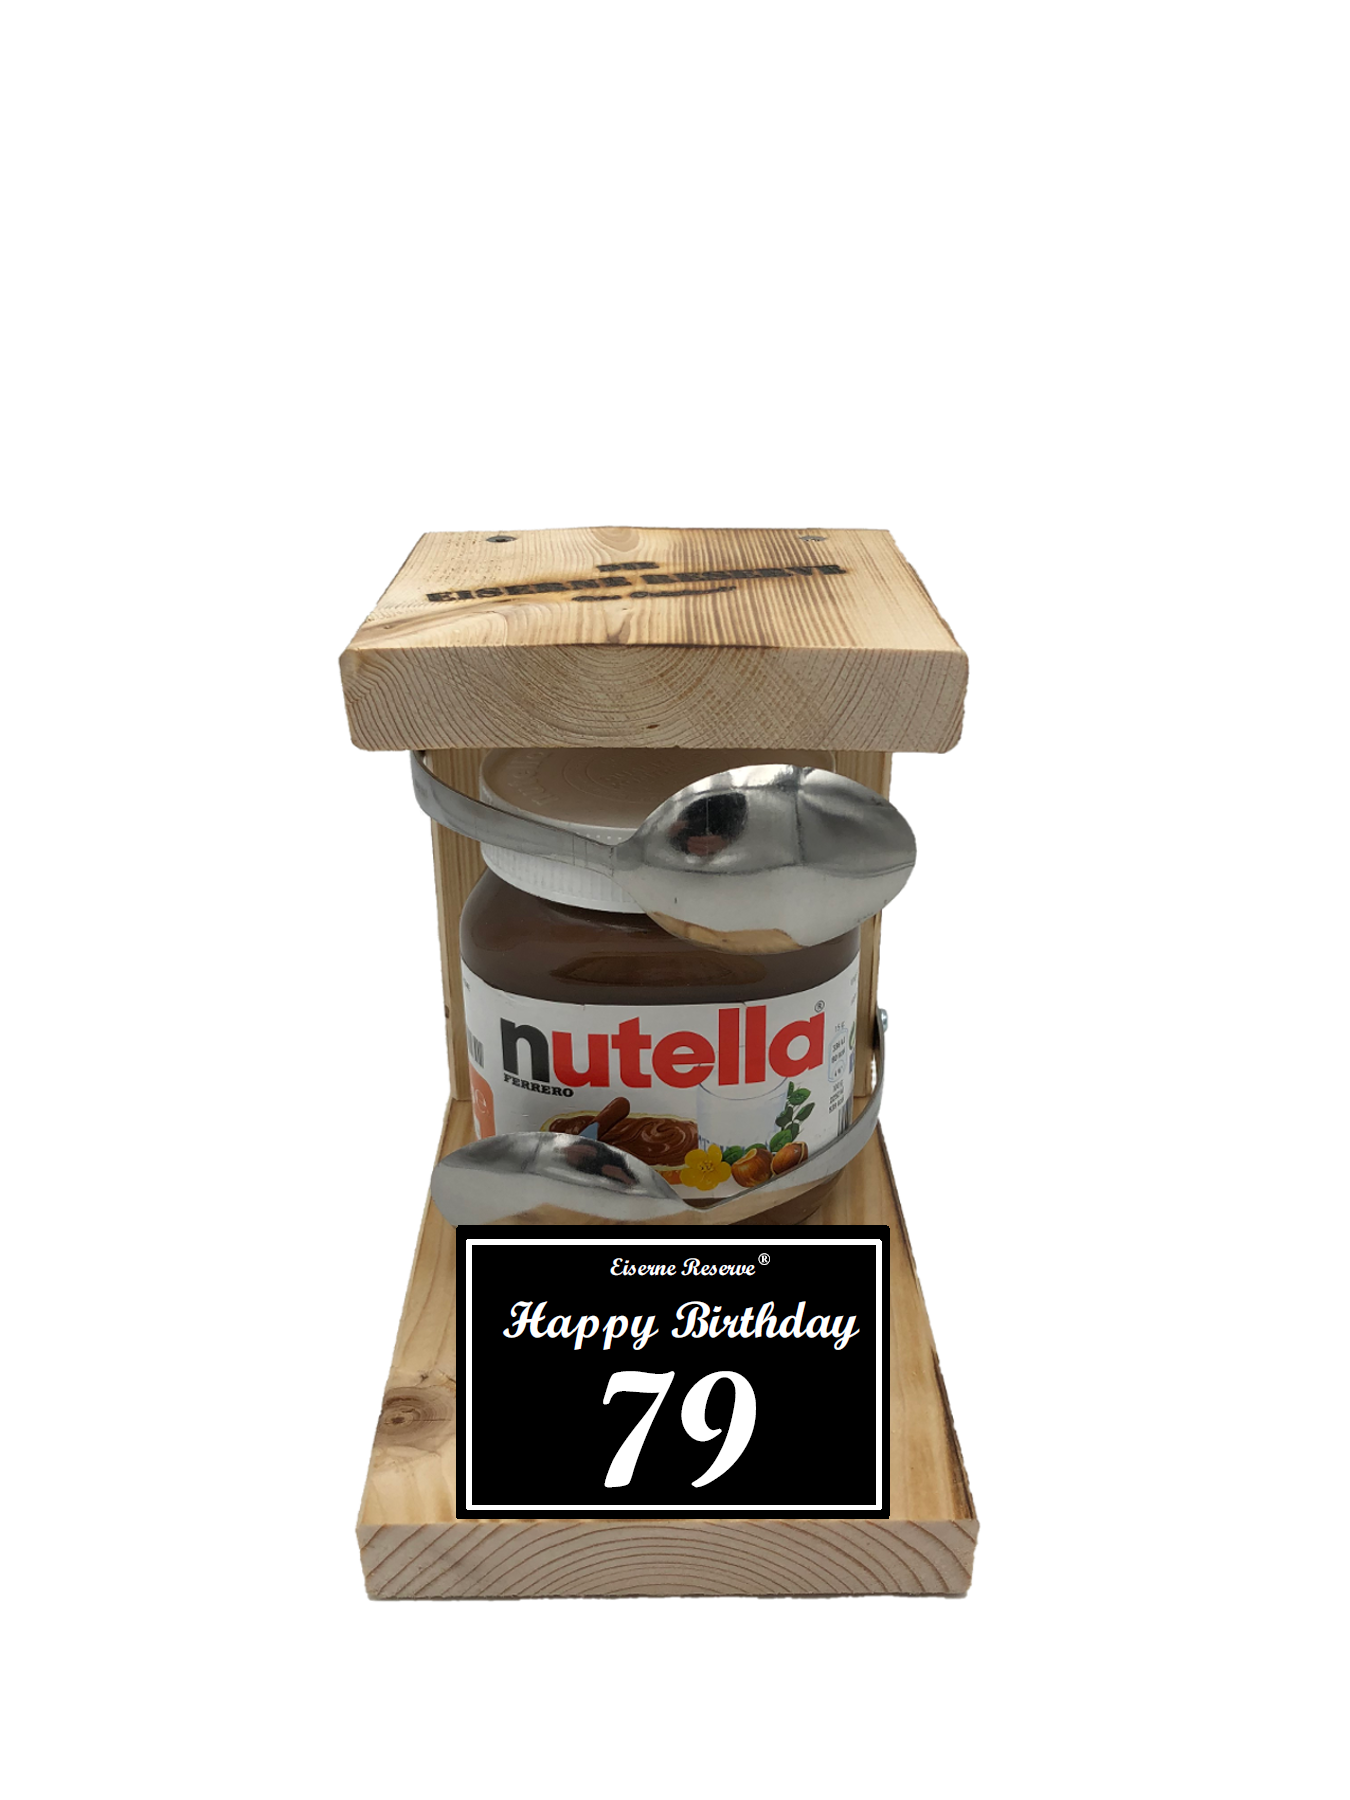 79 Happy Birthday Löffel Nutella Geschenk - Die Nutella Geschenkidee